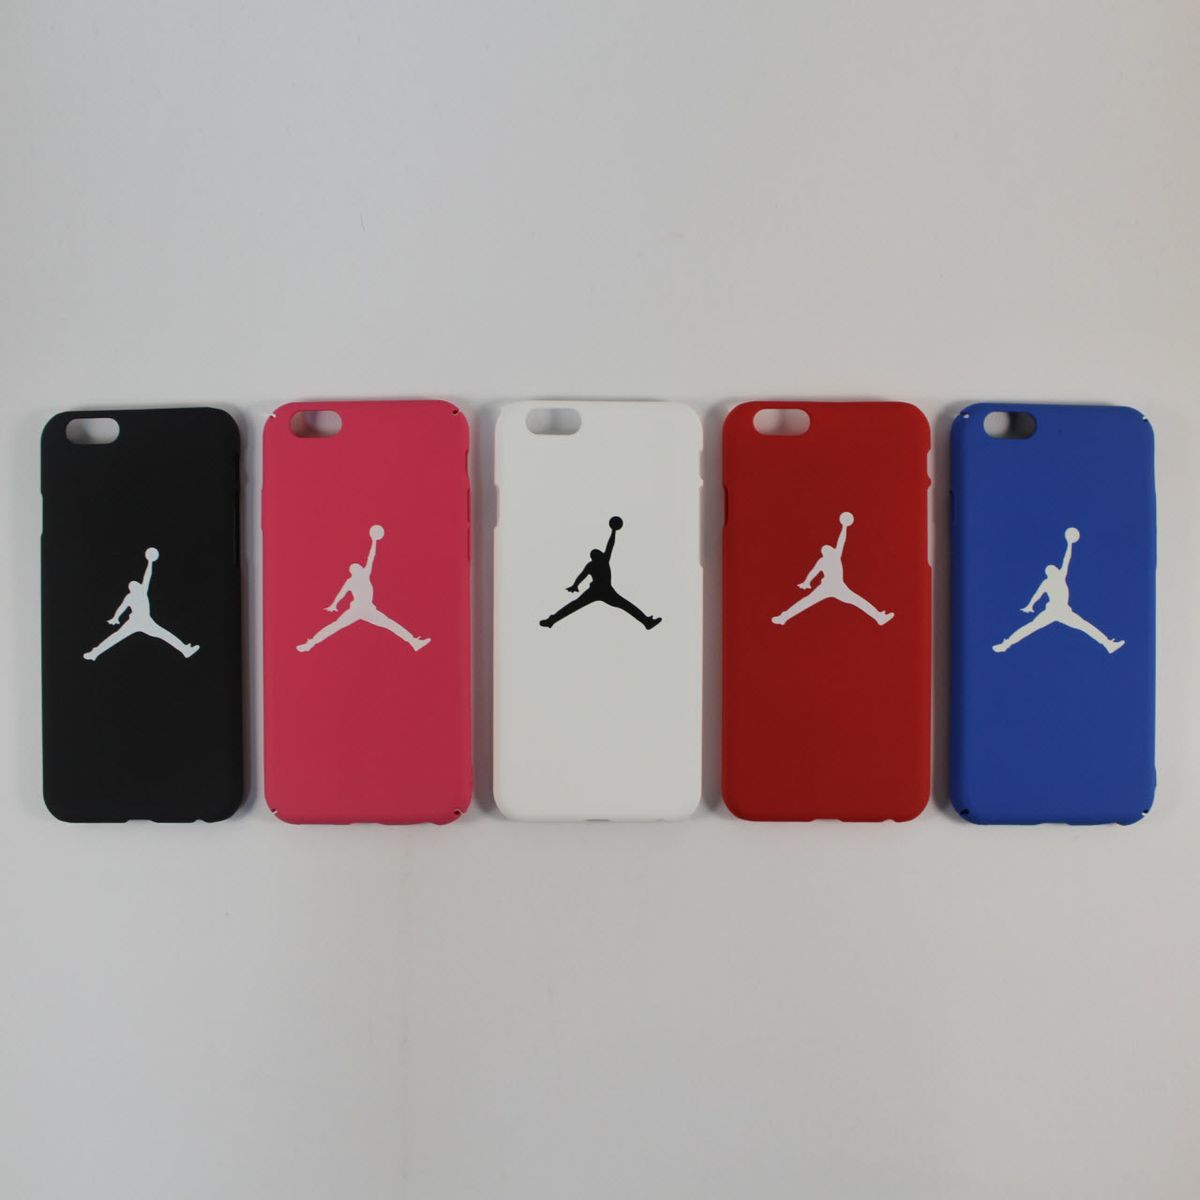 Чохол для iPhone - Jordan Air (синій), iPhone 6/6s